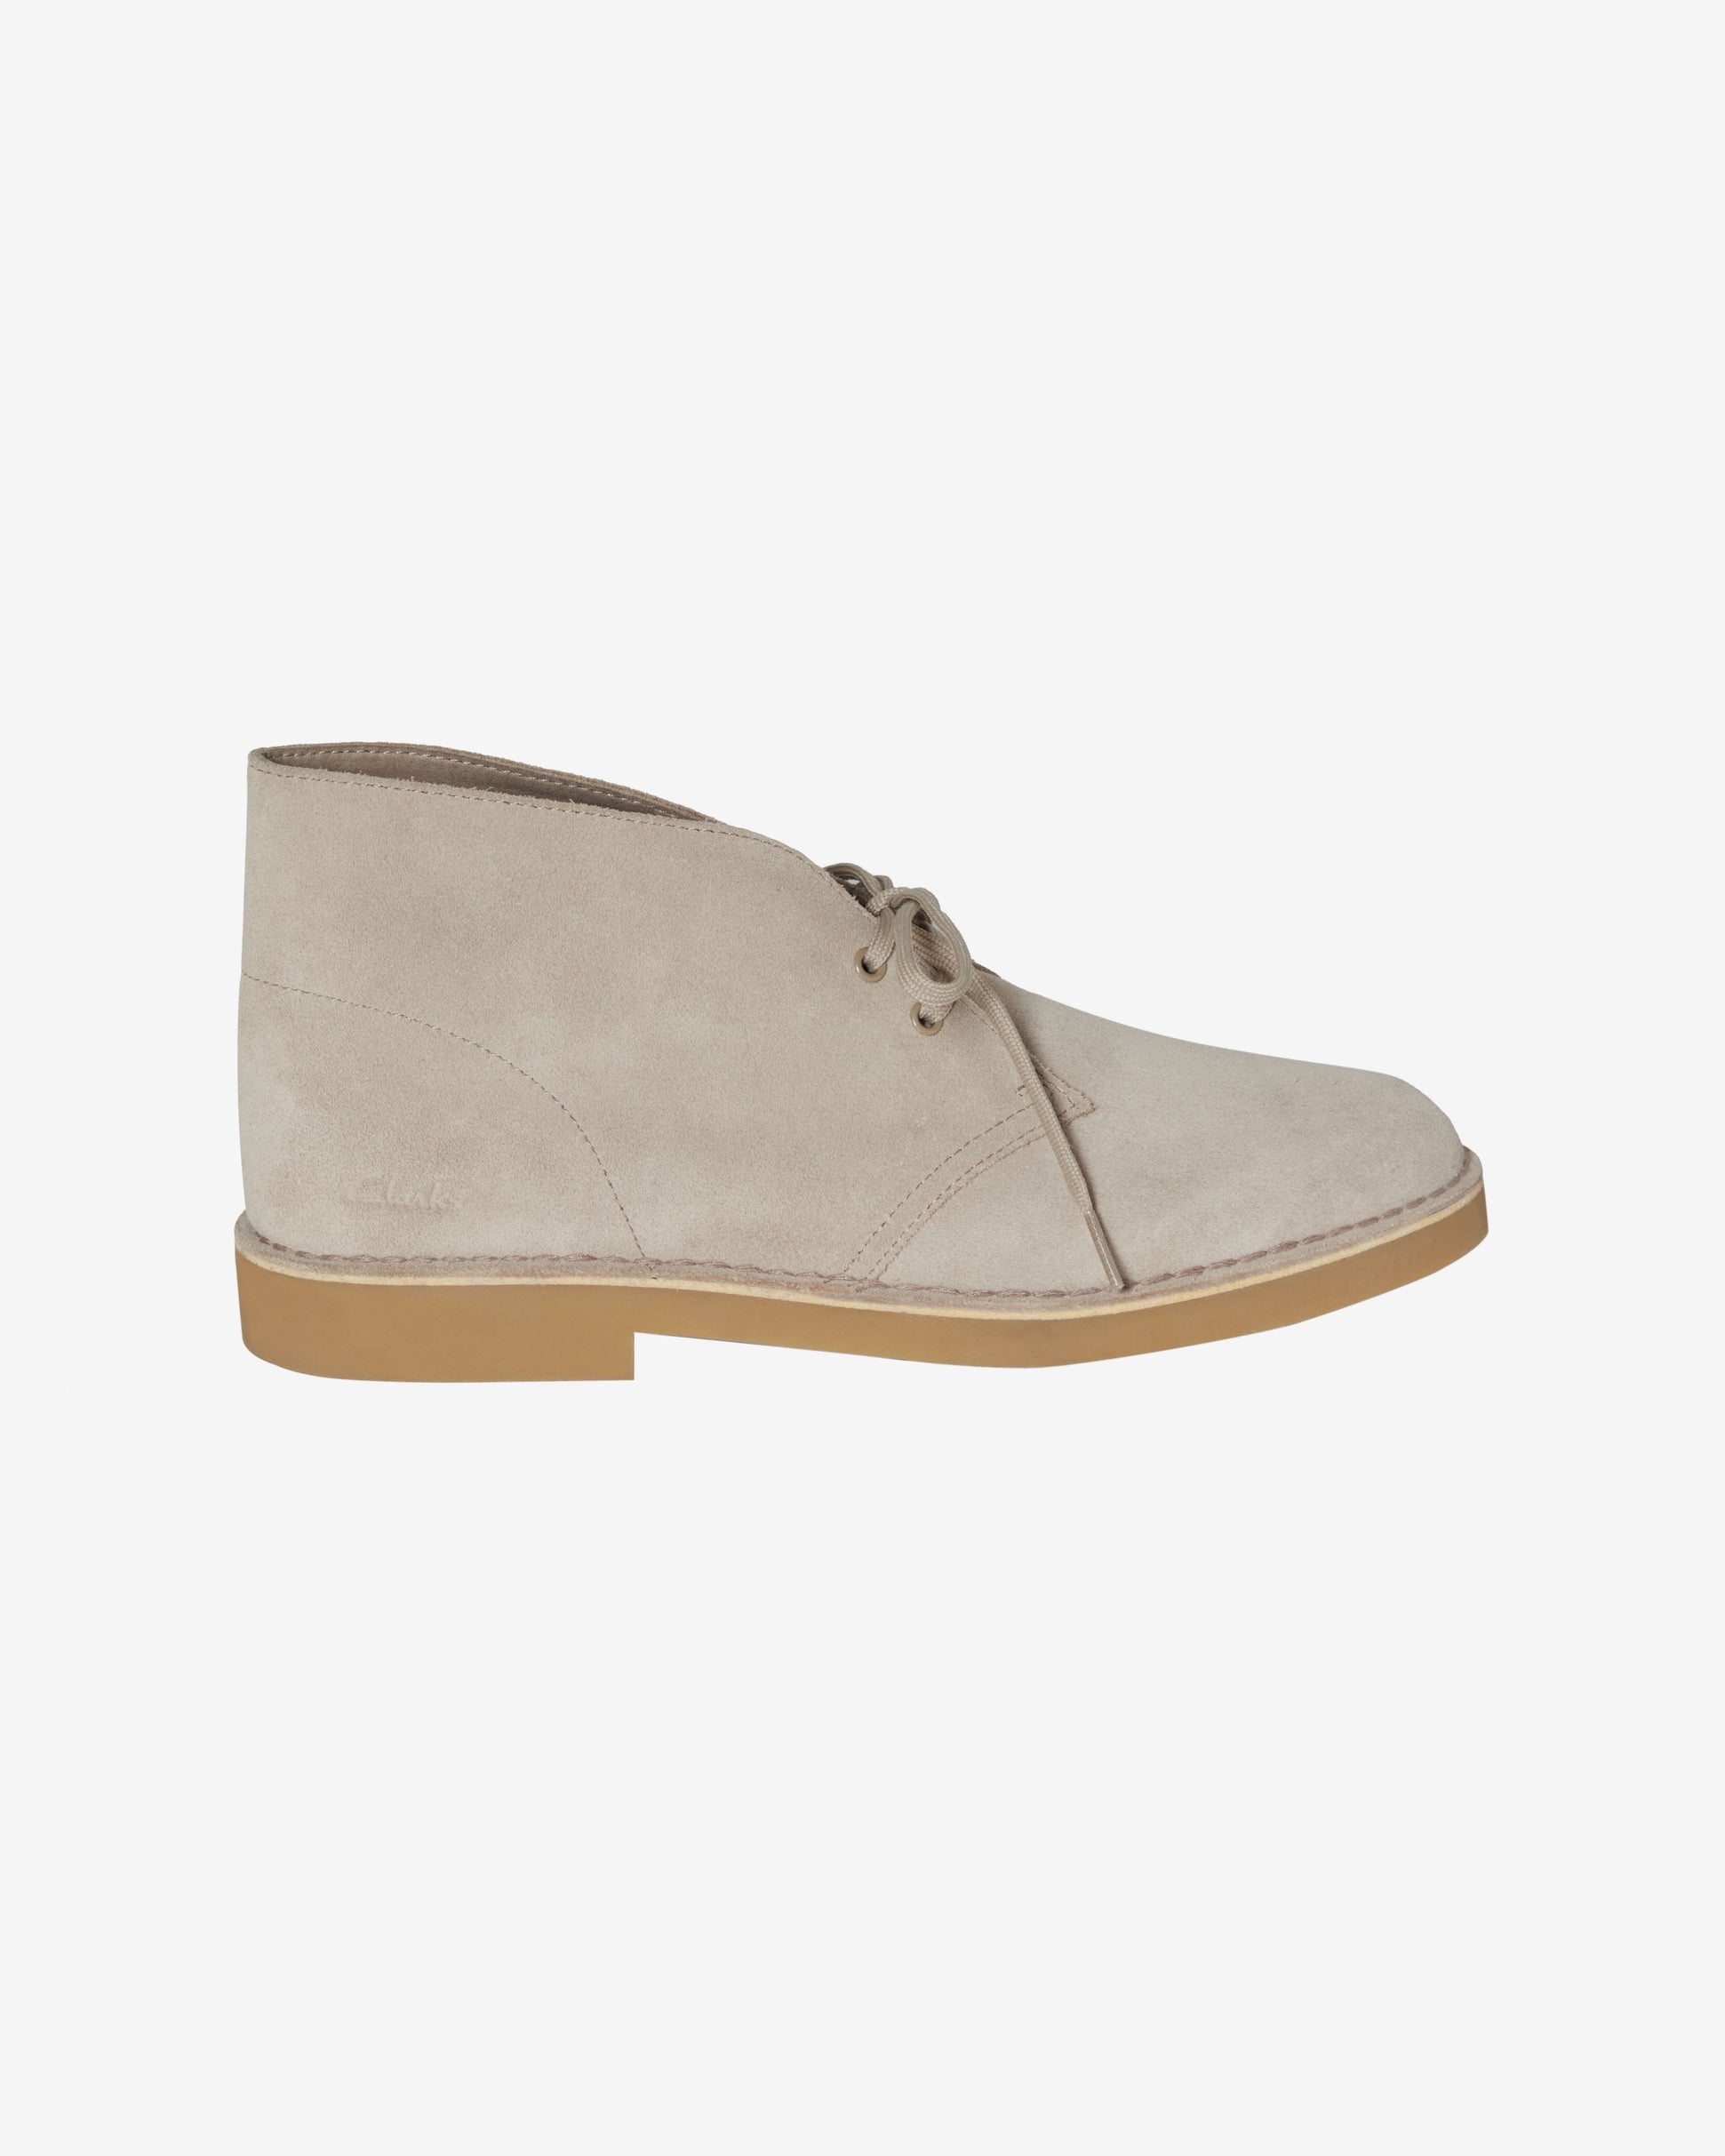 CLARK'S DESERT BOOT Shoes - Sand